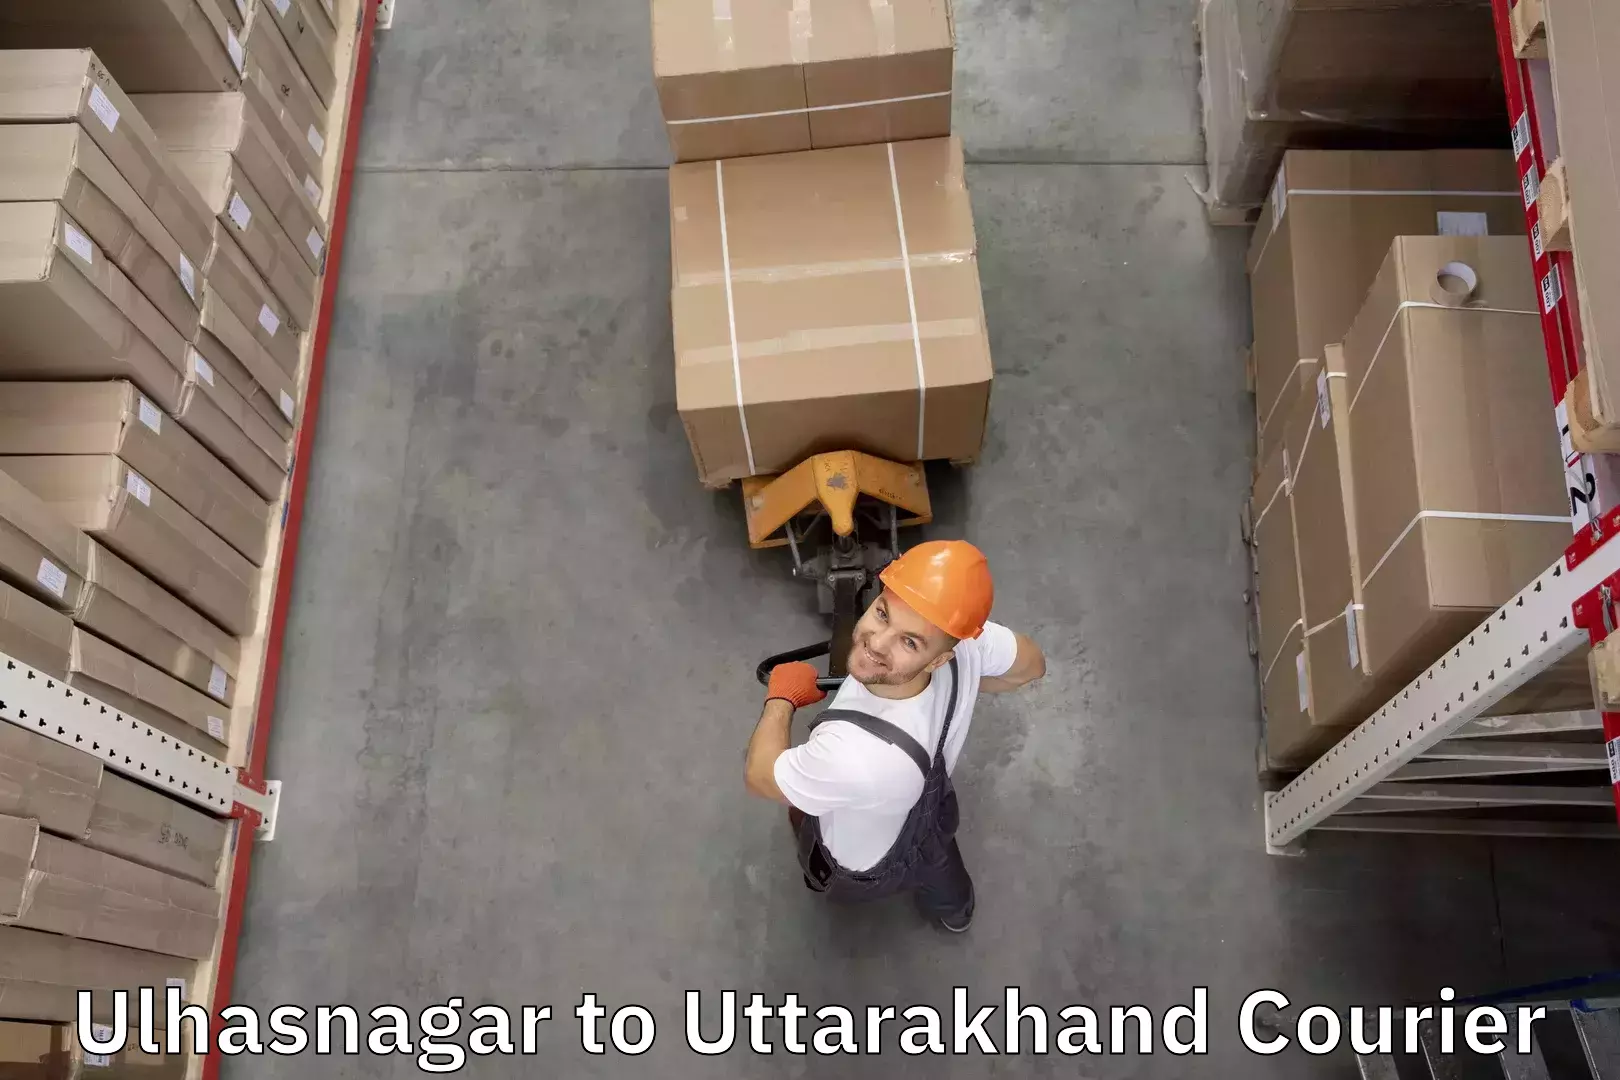 Baggage shipping experts Ulhasnagar to Nainital